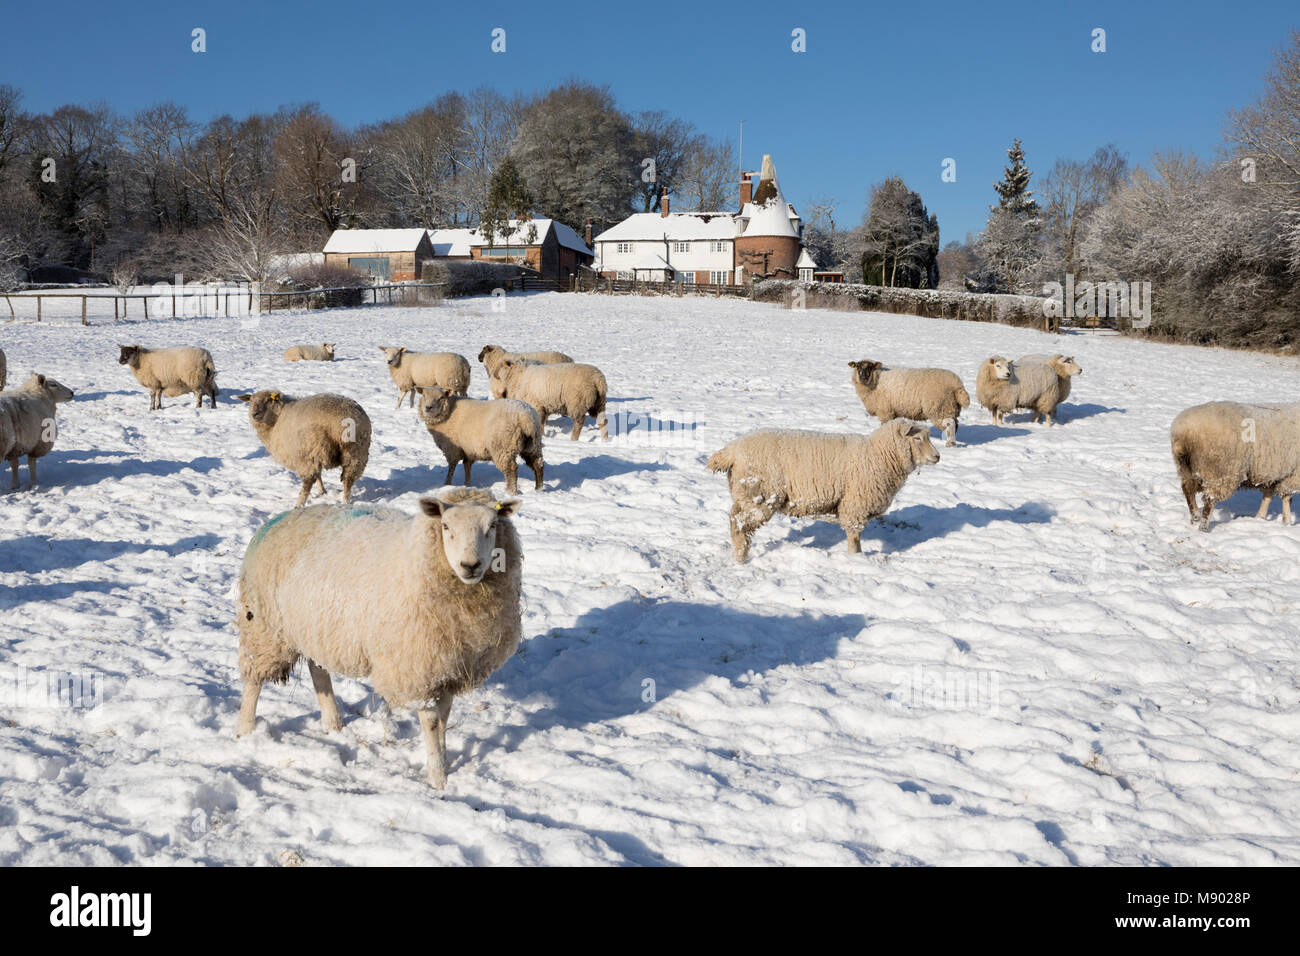 Ancienne maison Oast avec des moutons dans le champ couvert de neige provenant de sentier public, Burwash, East Sussex, Angleterre, Royaume-Uni, Europe Banque D'Images